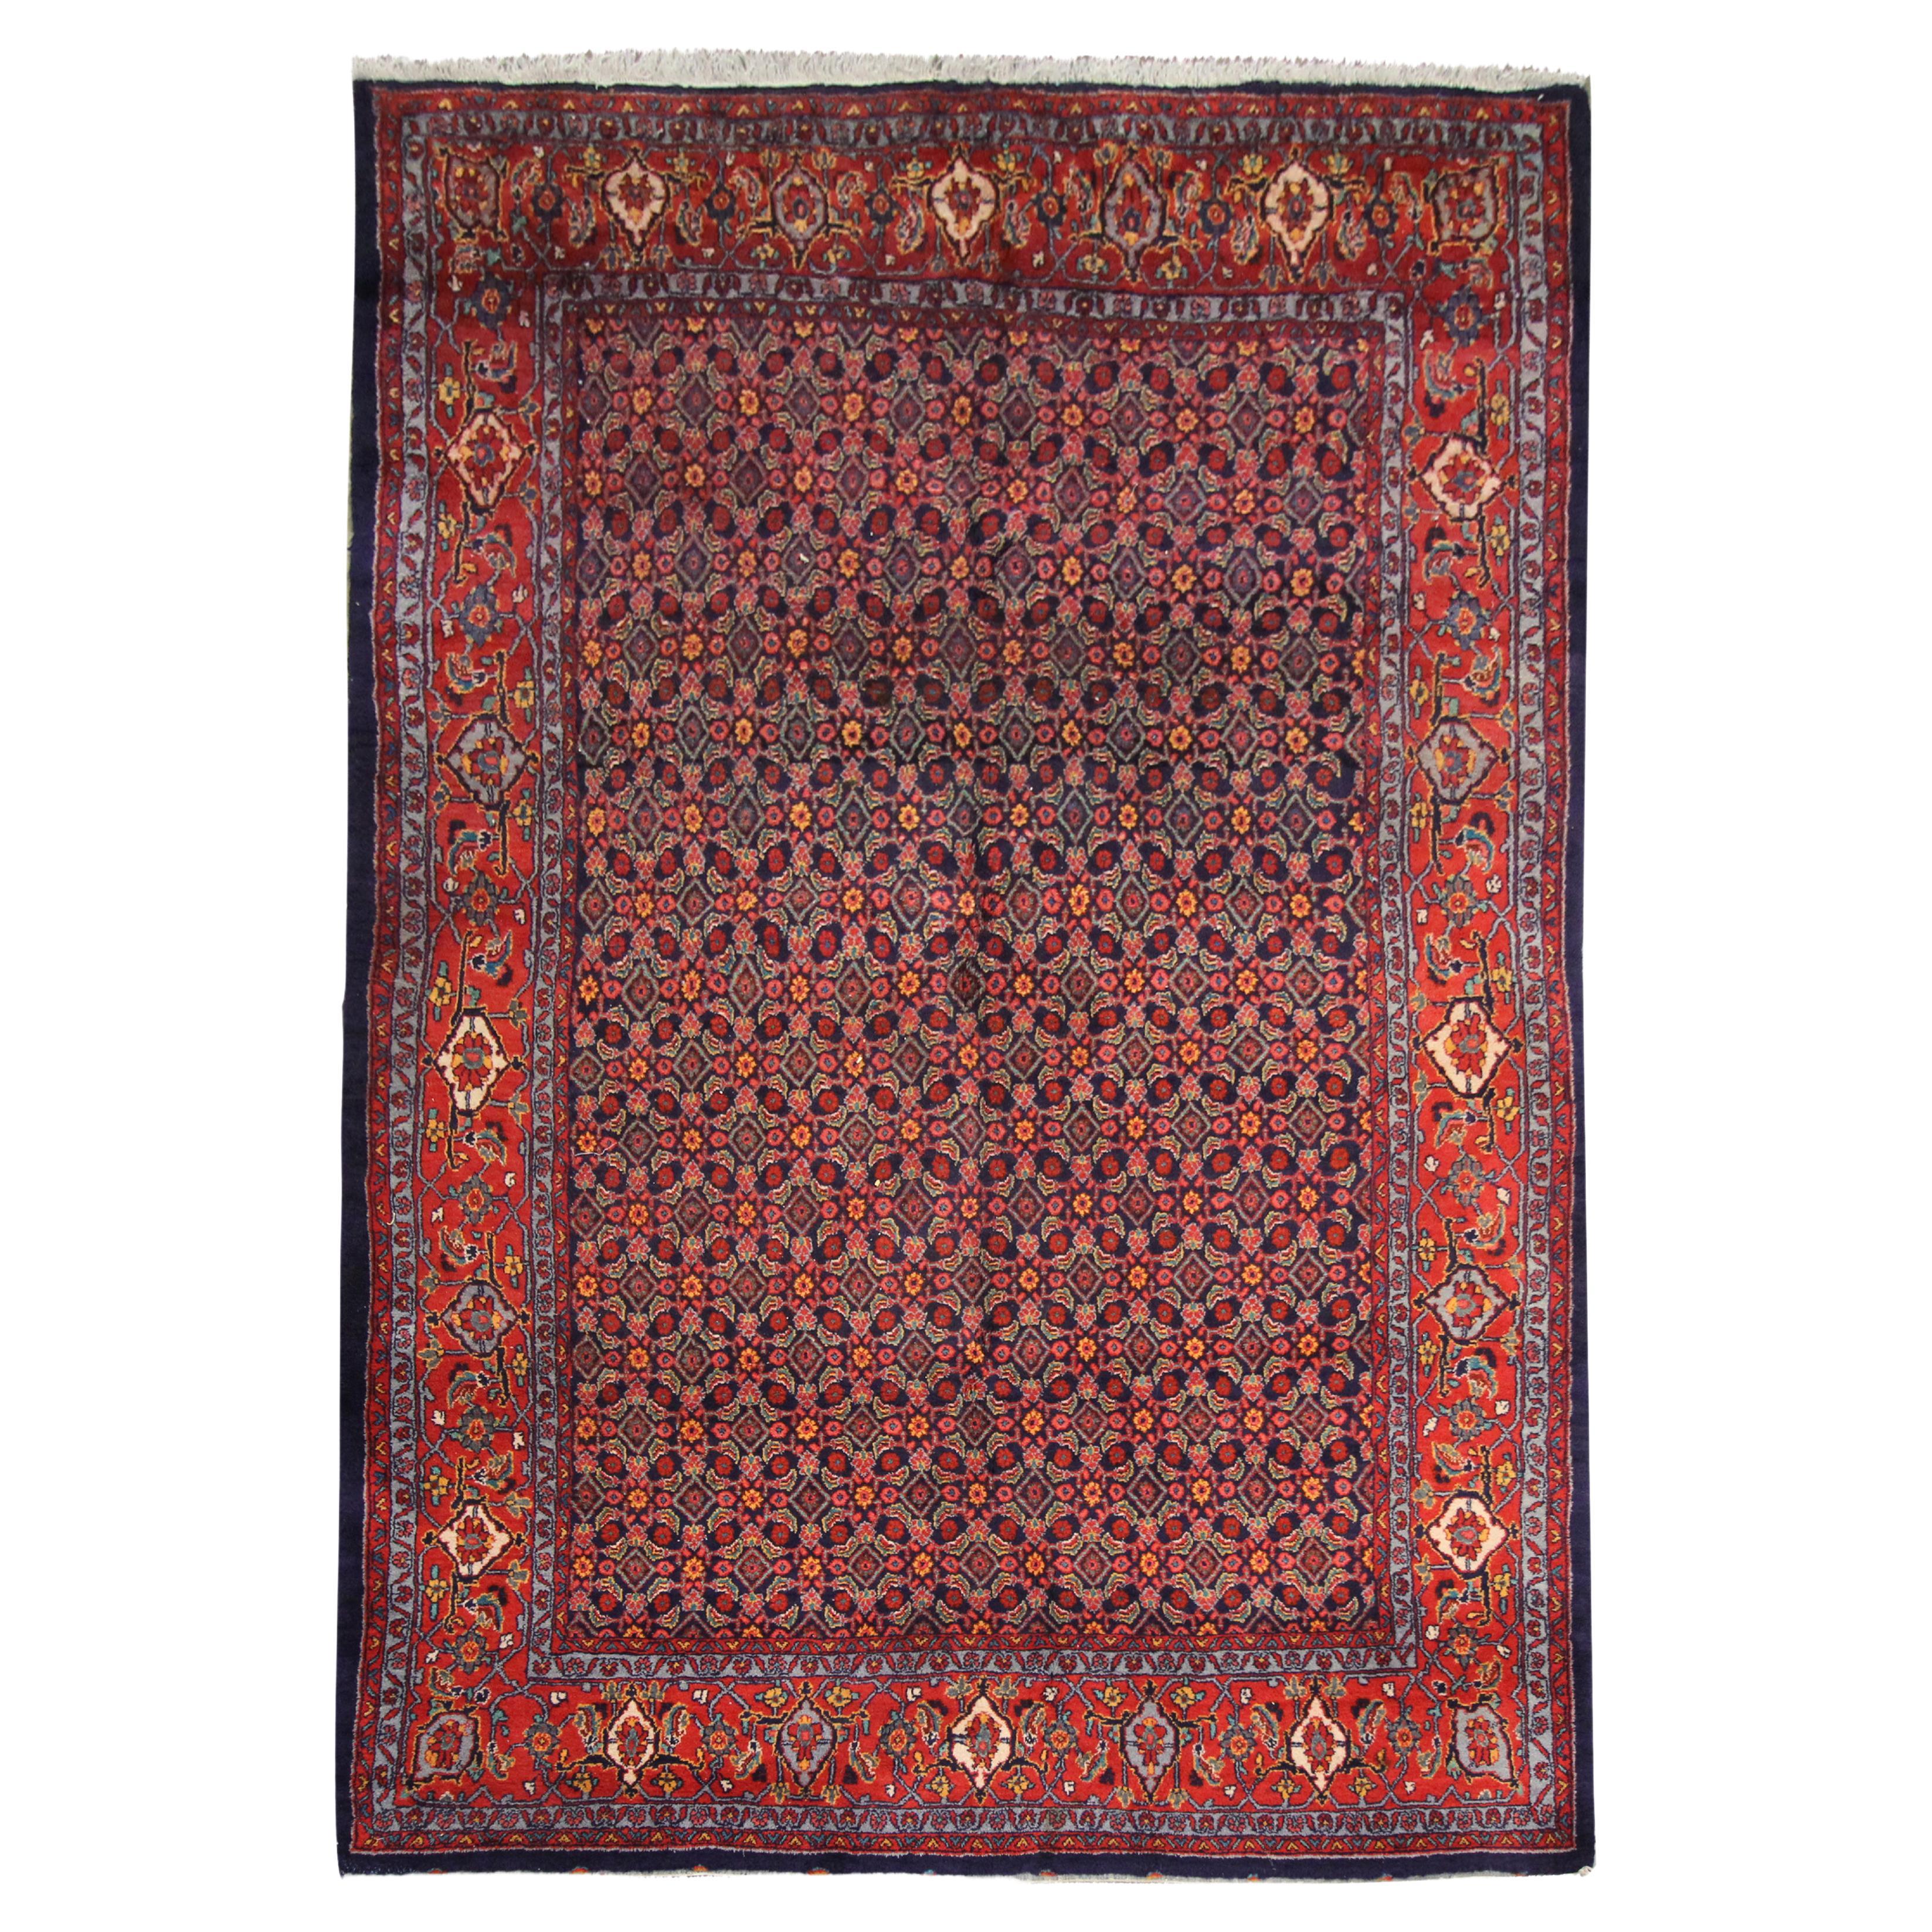 Handgefertigter traditioneller geometrischer Teppich in Rot, Orientalisch